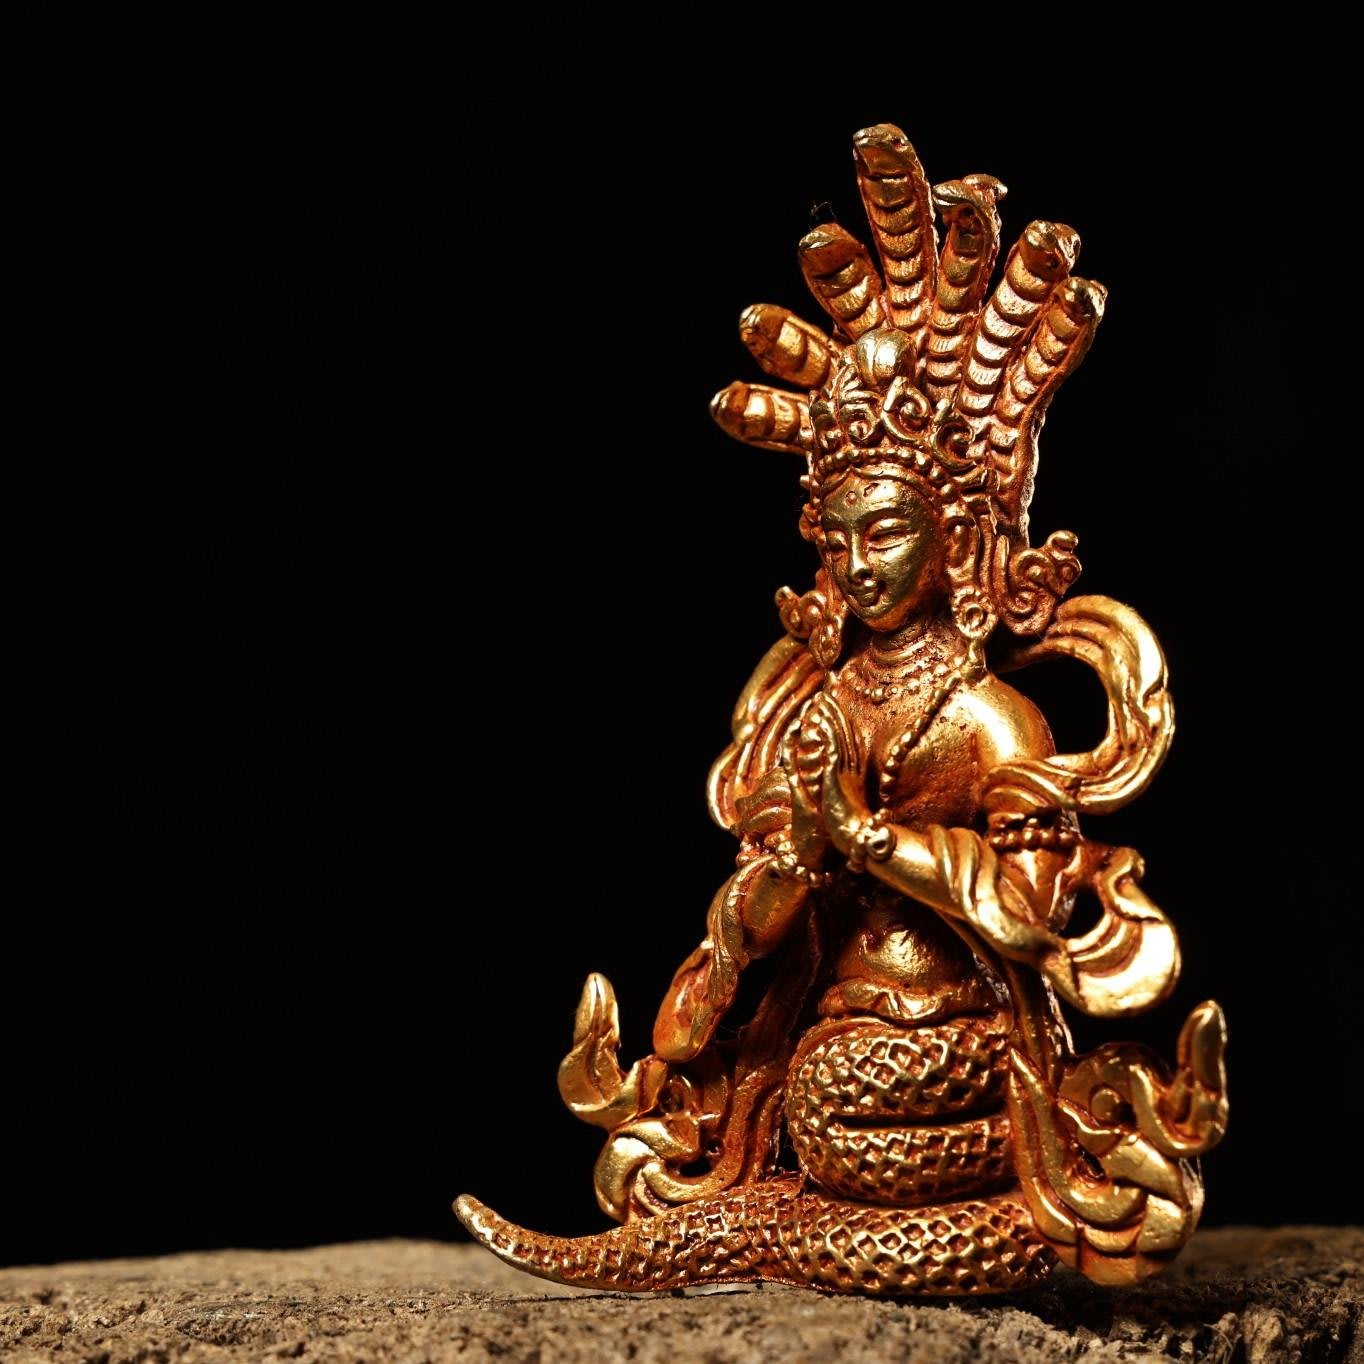 珍品舊藏收西藏收藏傳工藝純銅鎏金龍樹菩薩佛像工藝精湛造像精美重140 